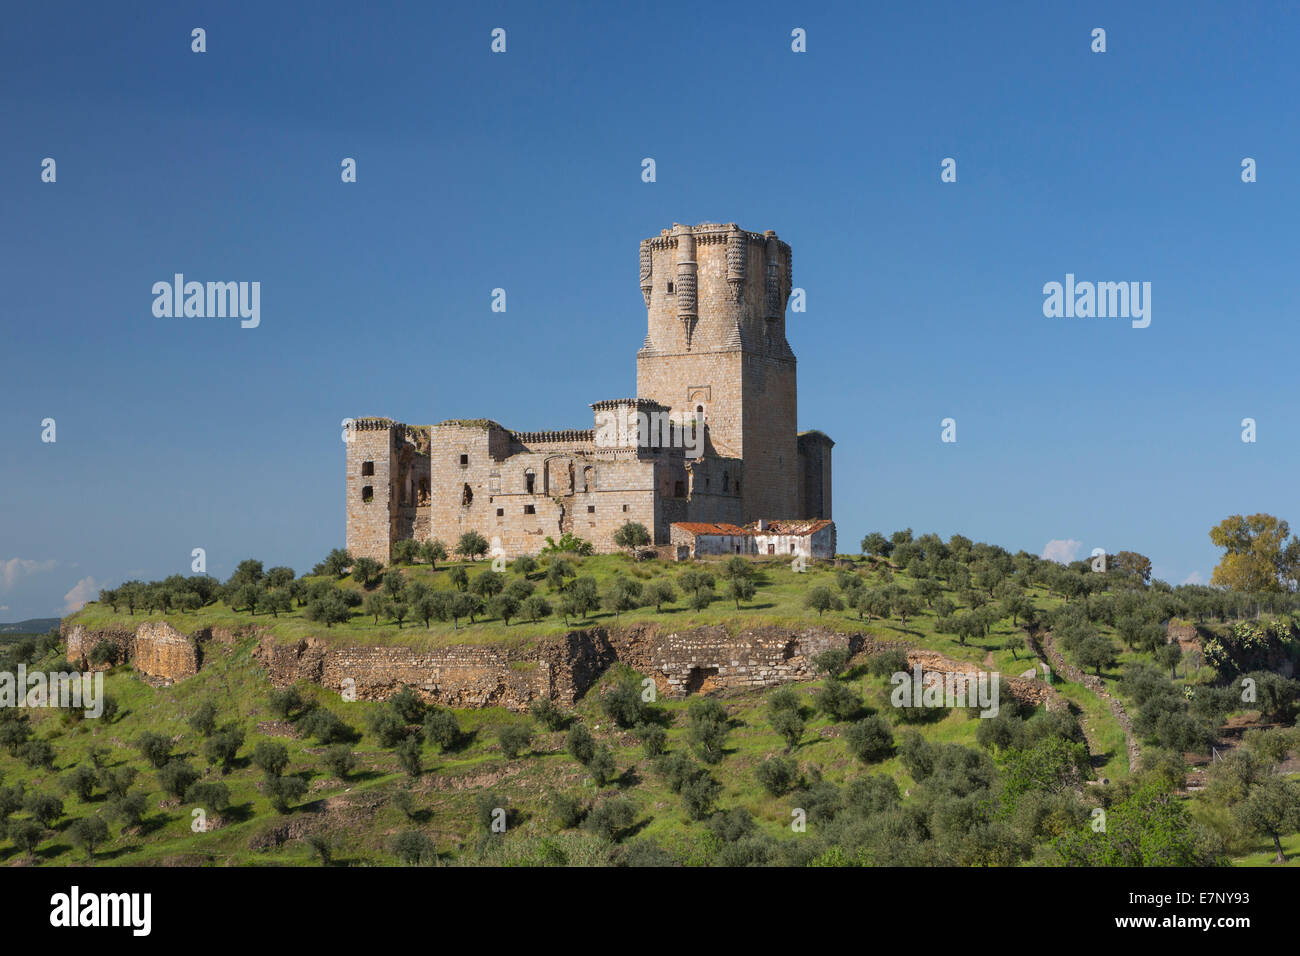 L'Andalousie, Belalcazar, château, Cordoba, Espagne, Europe, architecture, histoire, paysage, tourisme, voyages Banque D'Images